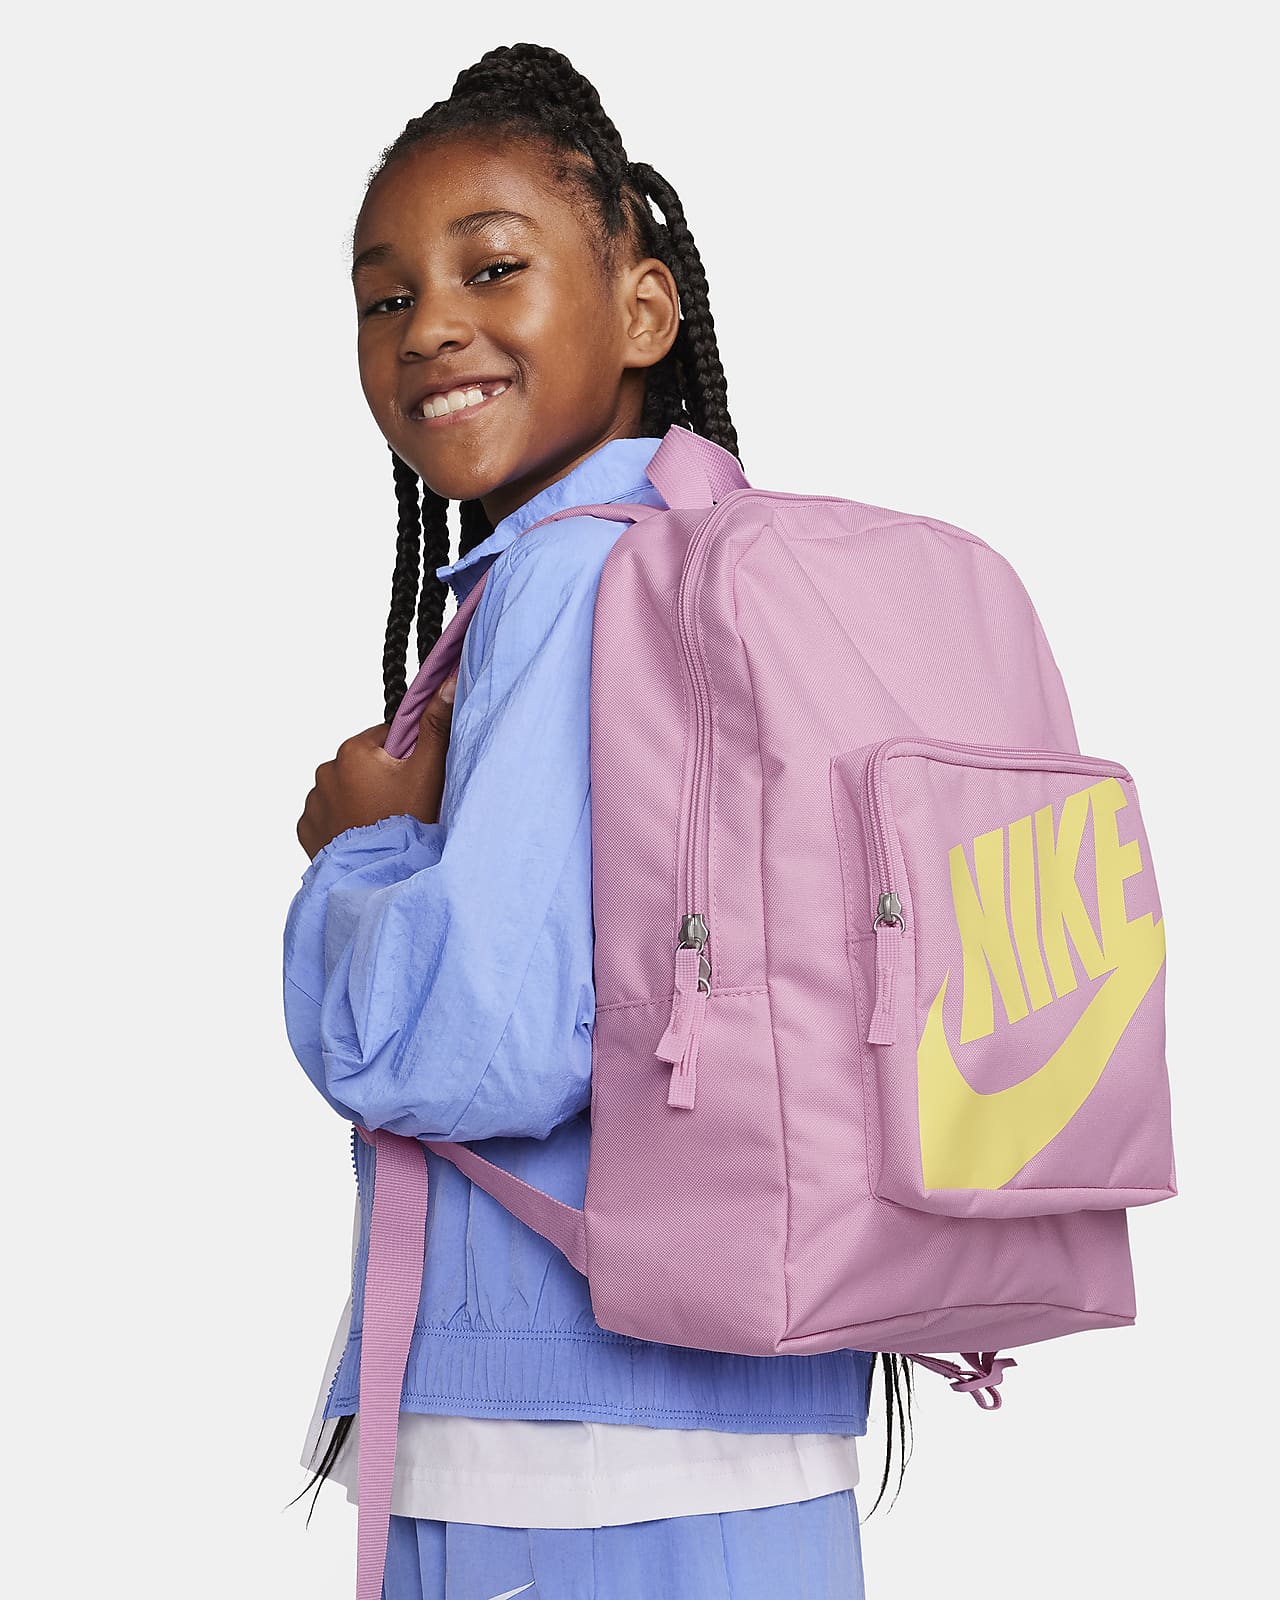 Dětský batoh Nike Classic (16 l)